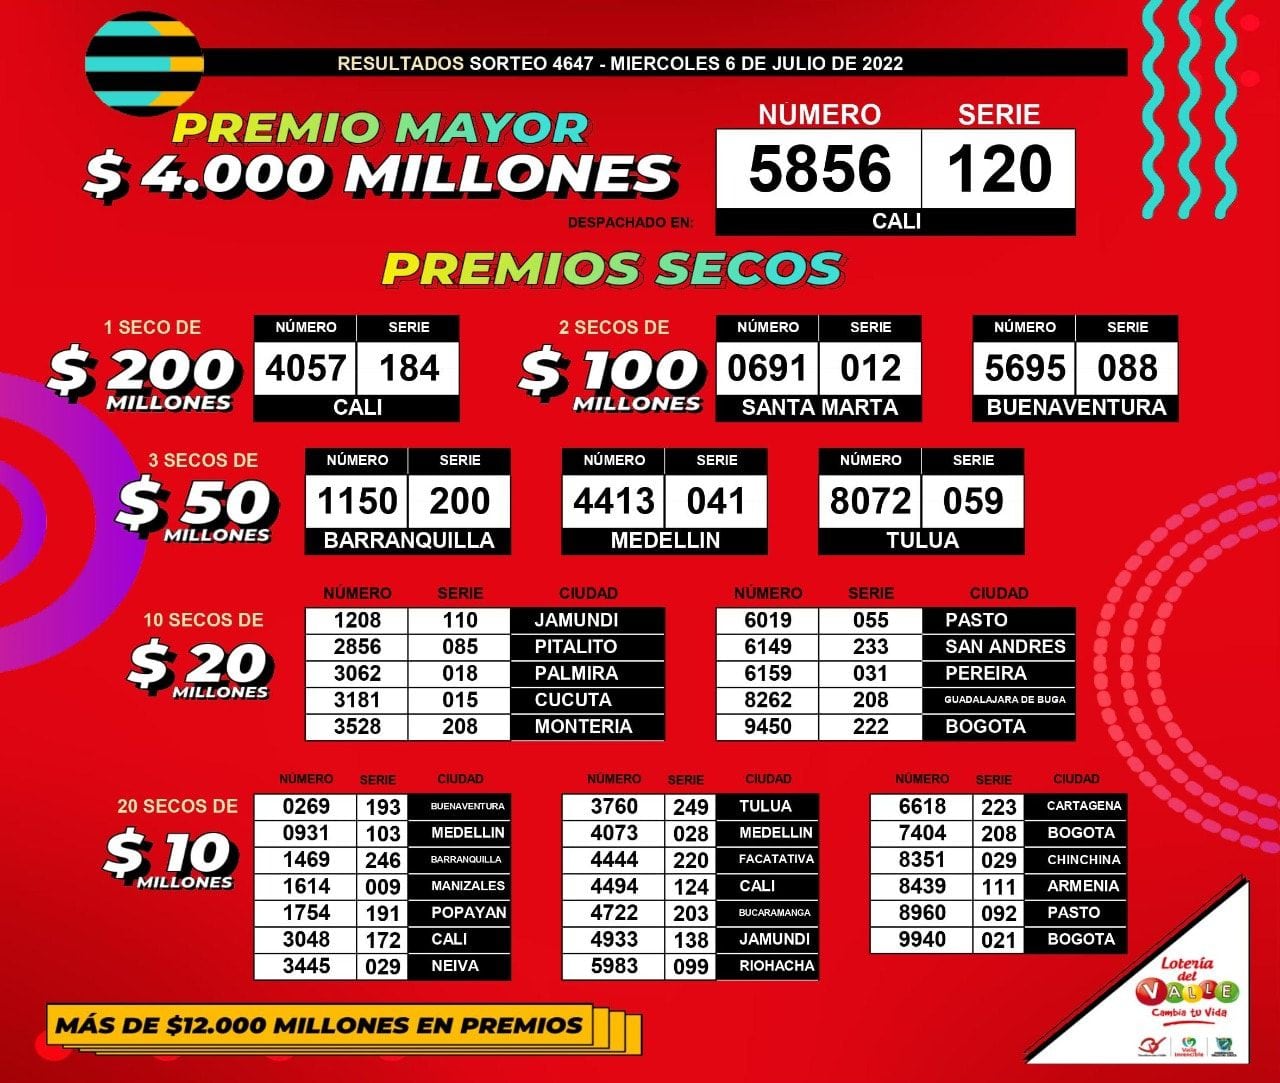 Ganadores Lotería del Valle, sorteo del 6 de julio de 2022.